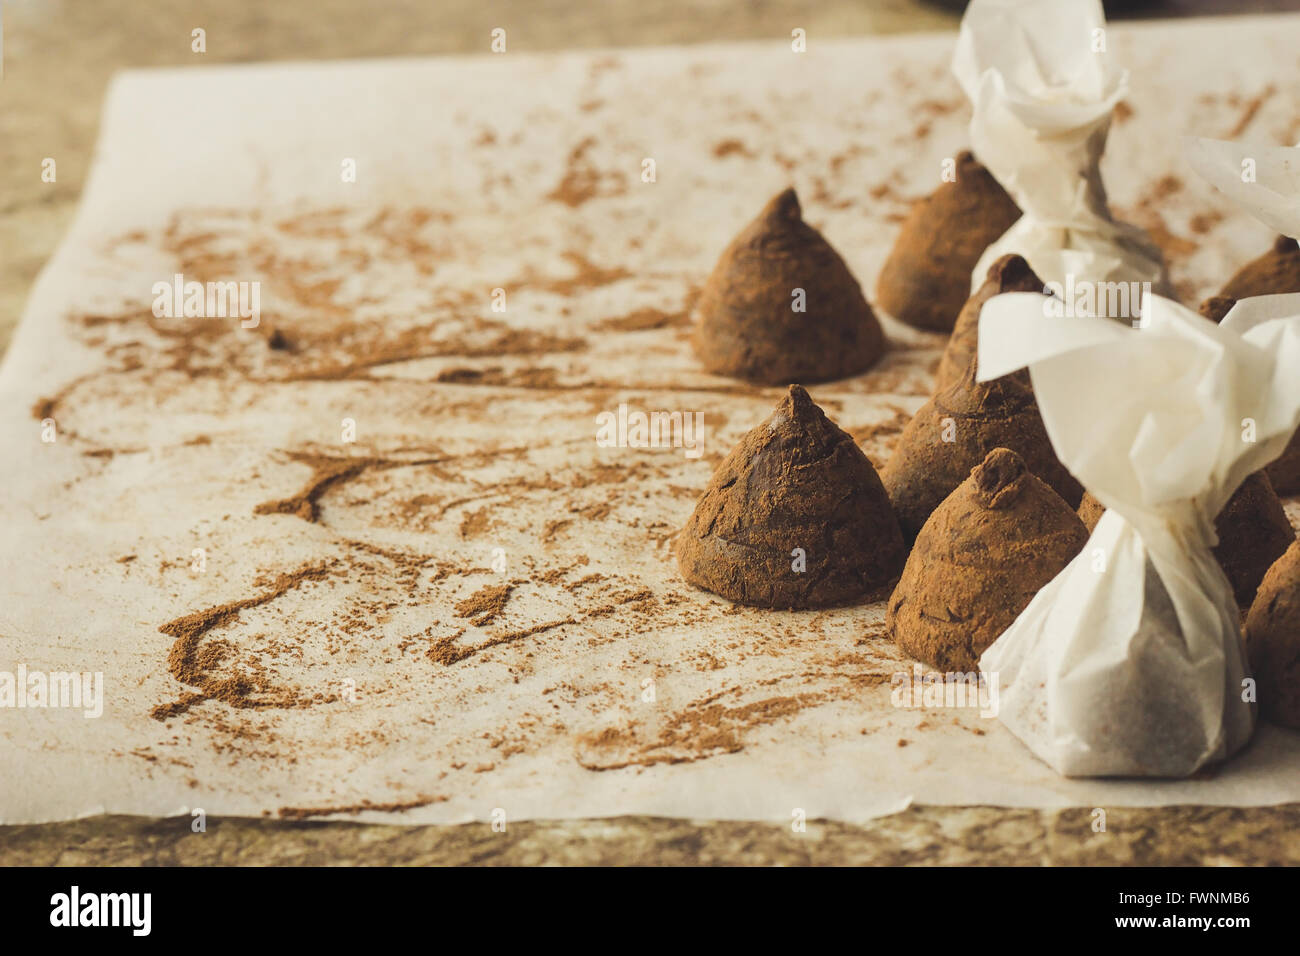 Truffes au chocolat maison sur papier cuisson copie espace selective focus Banque D'Images